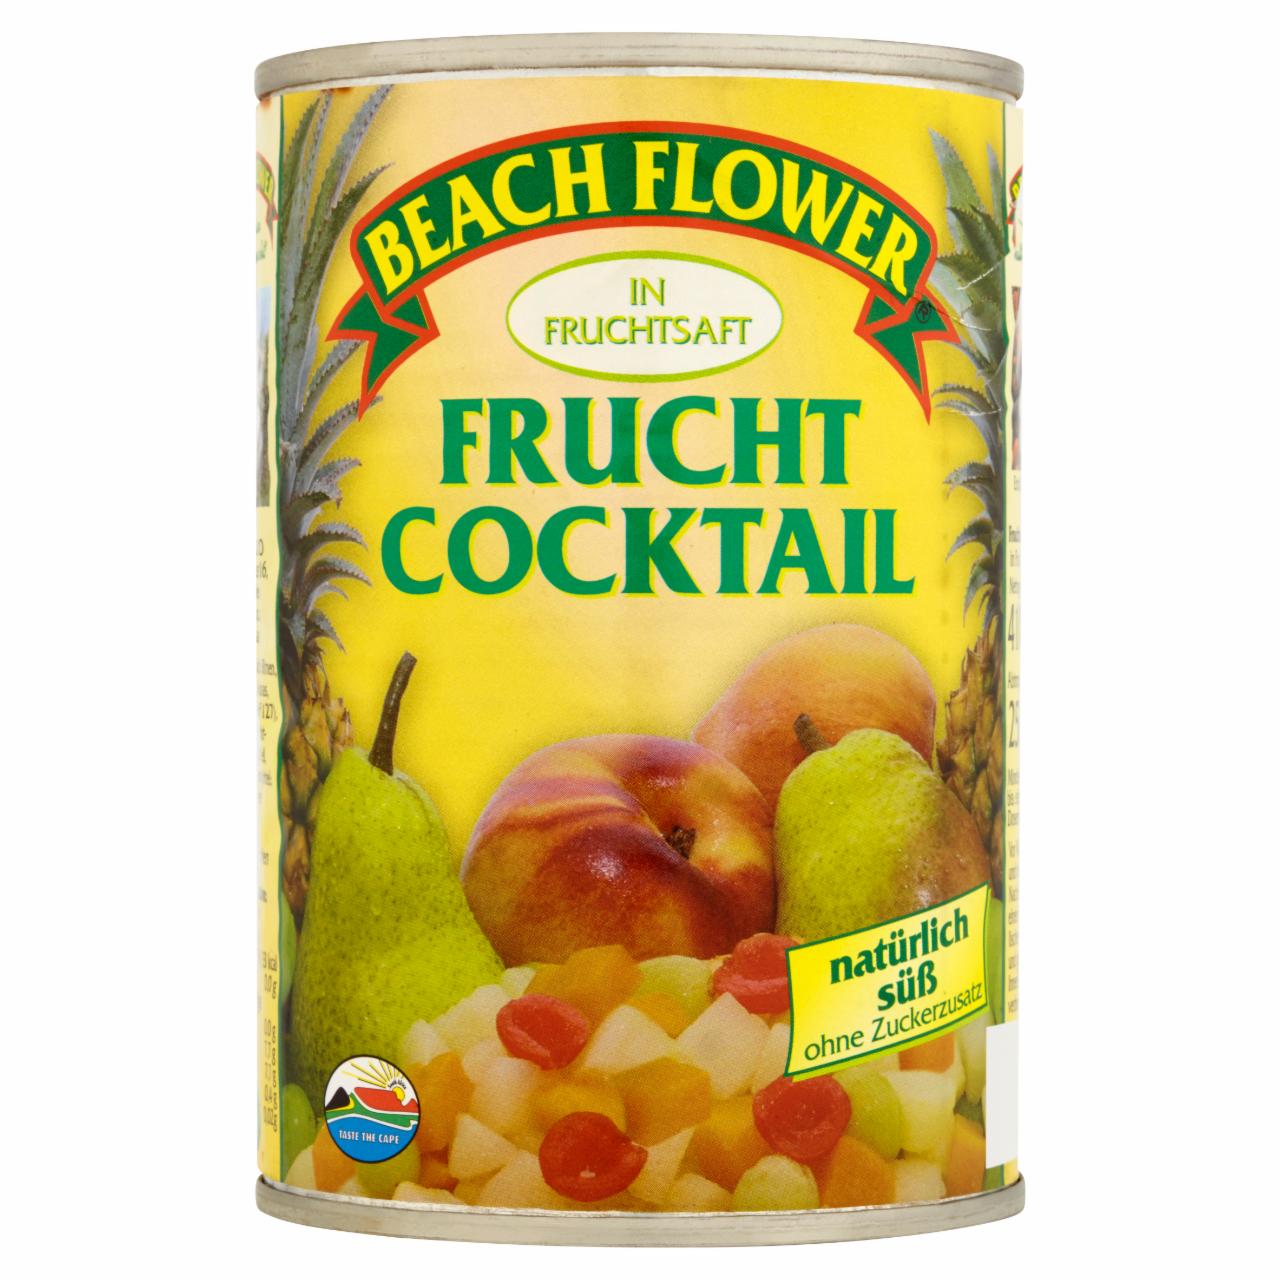 Zdjęcia - Beach Flower Koktajl owocowy w soku owocowym 410 g